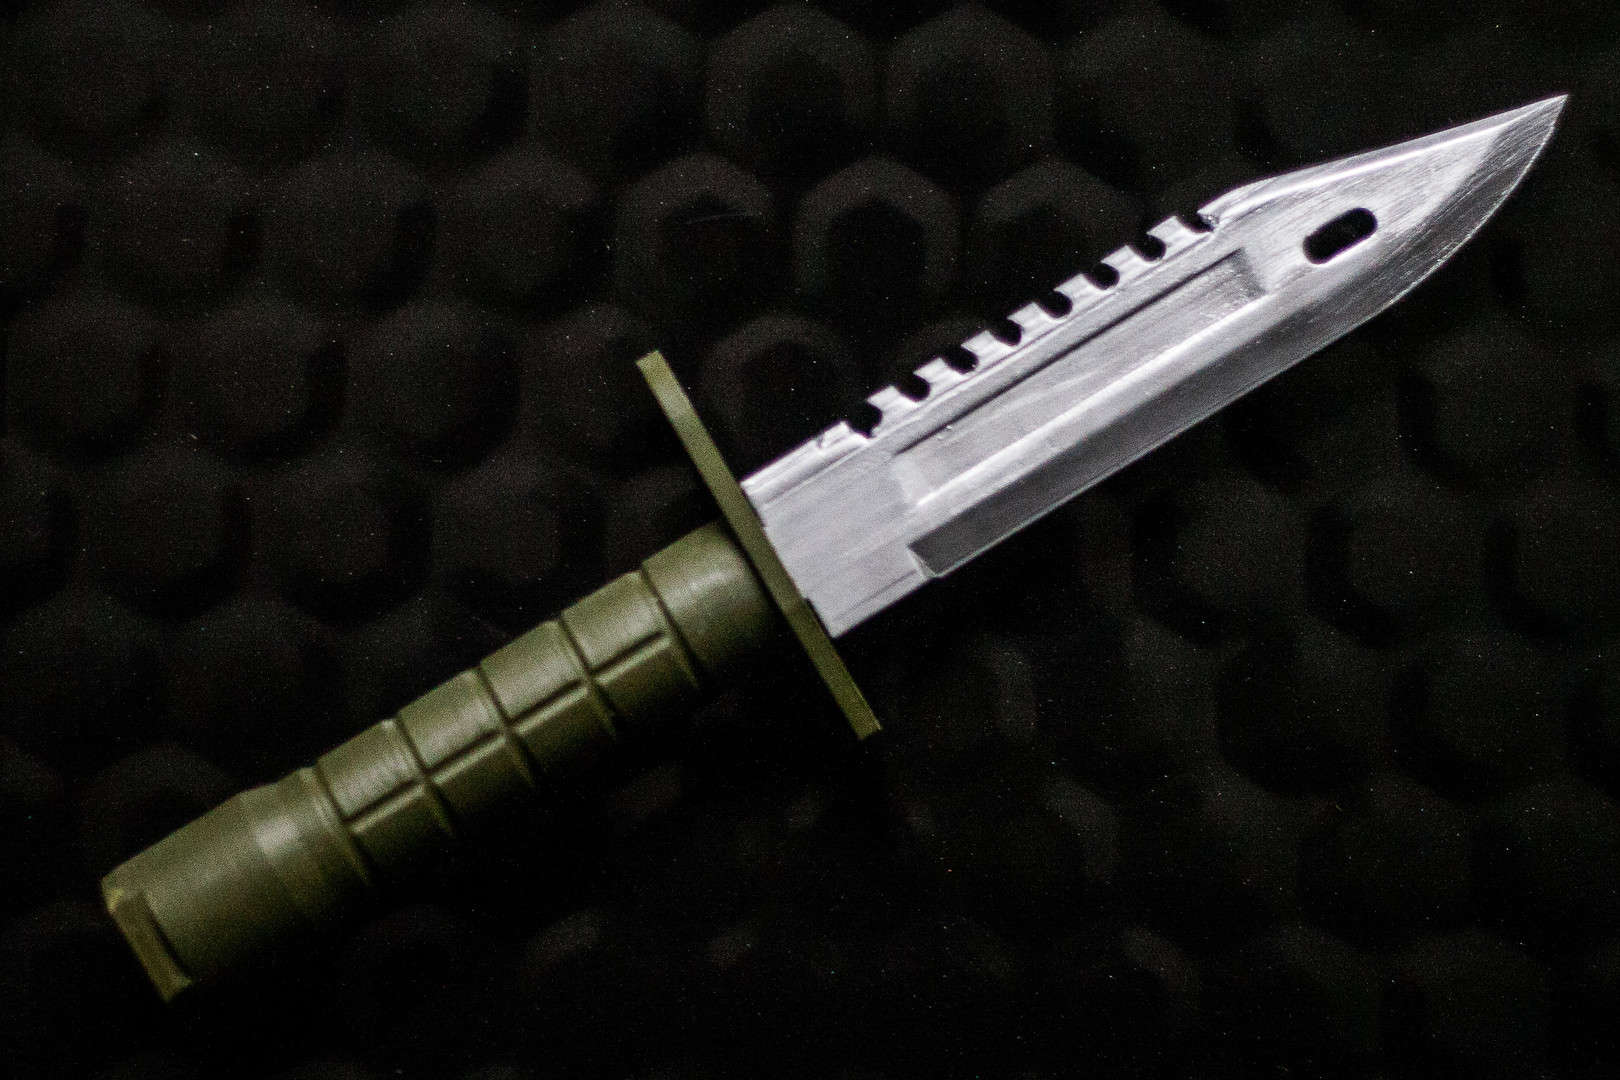 Resident Evil 4 Remake - Fighting Knife - Krausers Knife - Leon 3D model 3D  printable